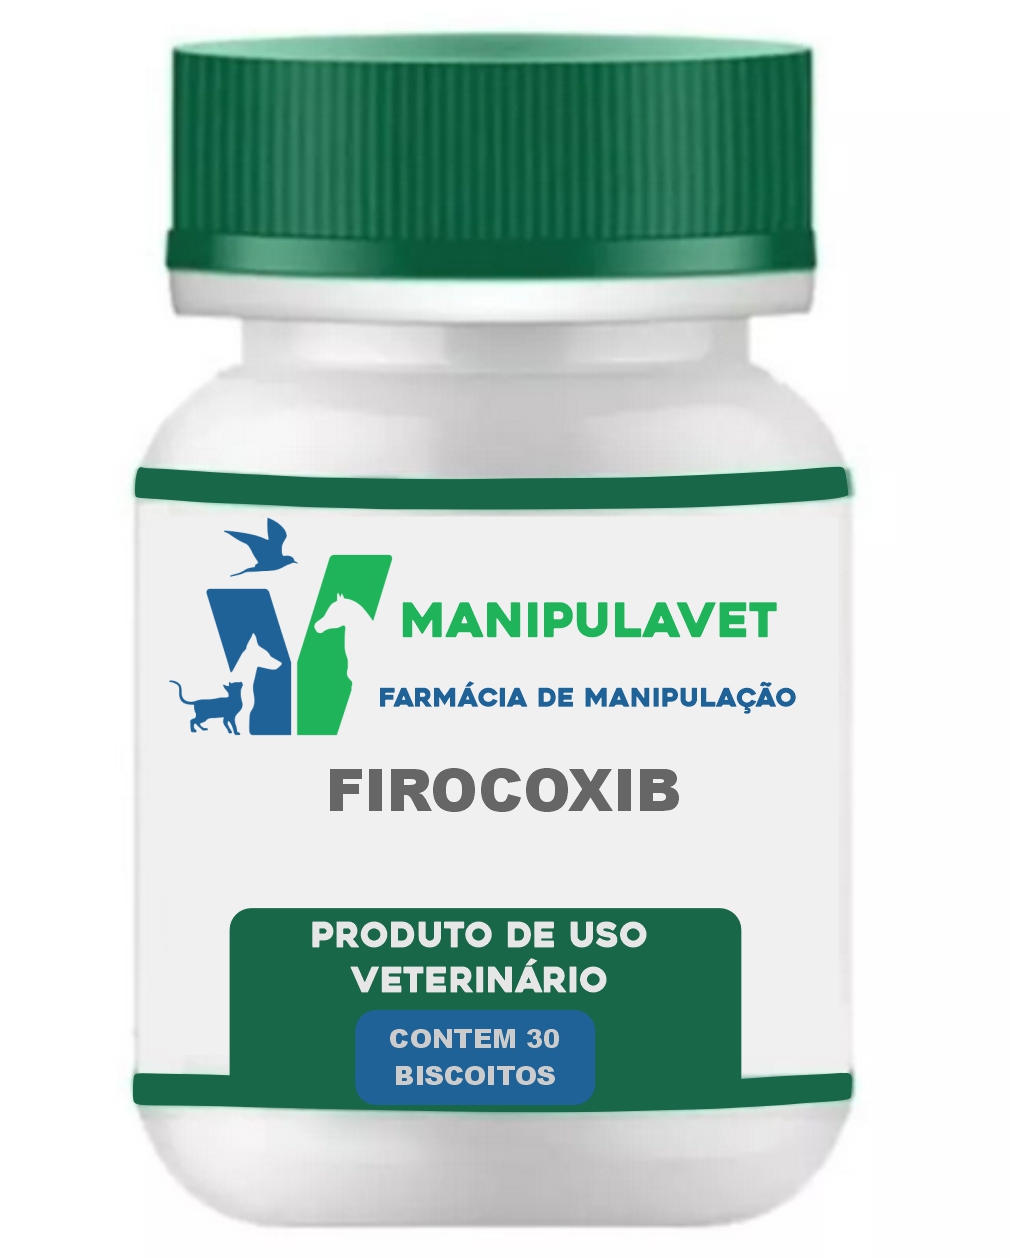 FIROCOXIB PARA CACHORROS - ANTI-INFLAMATÓRIO DORES AGUDAS